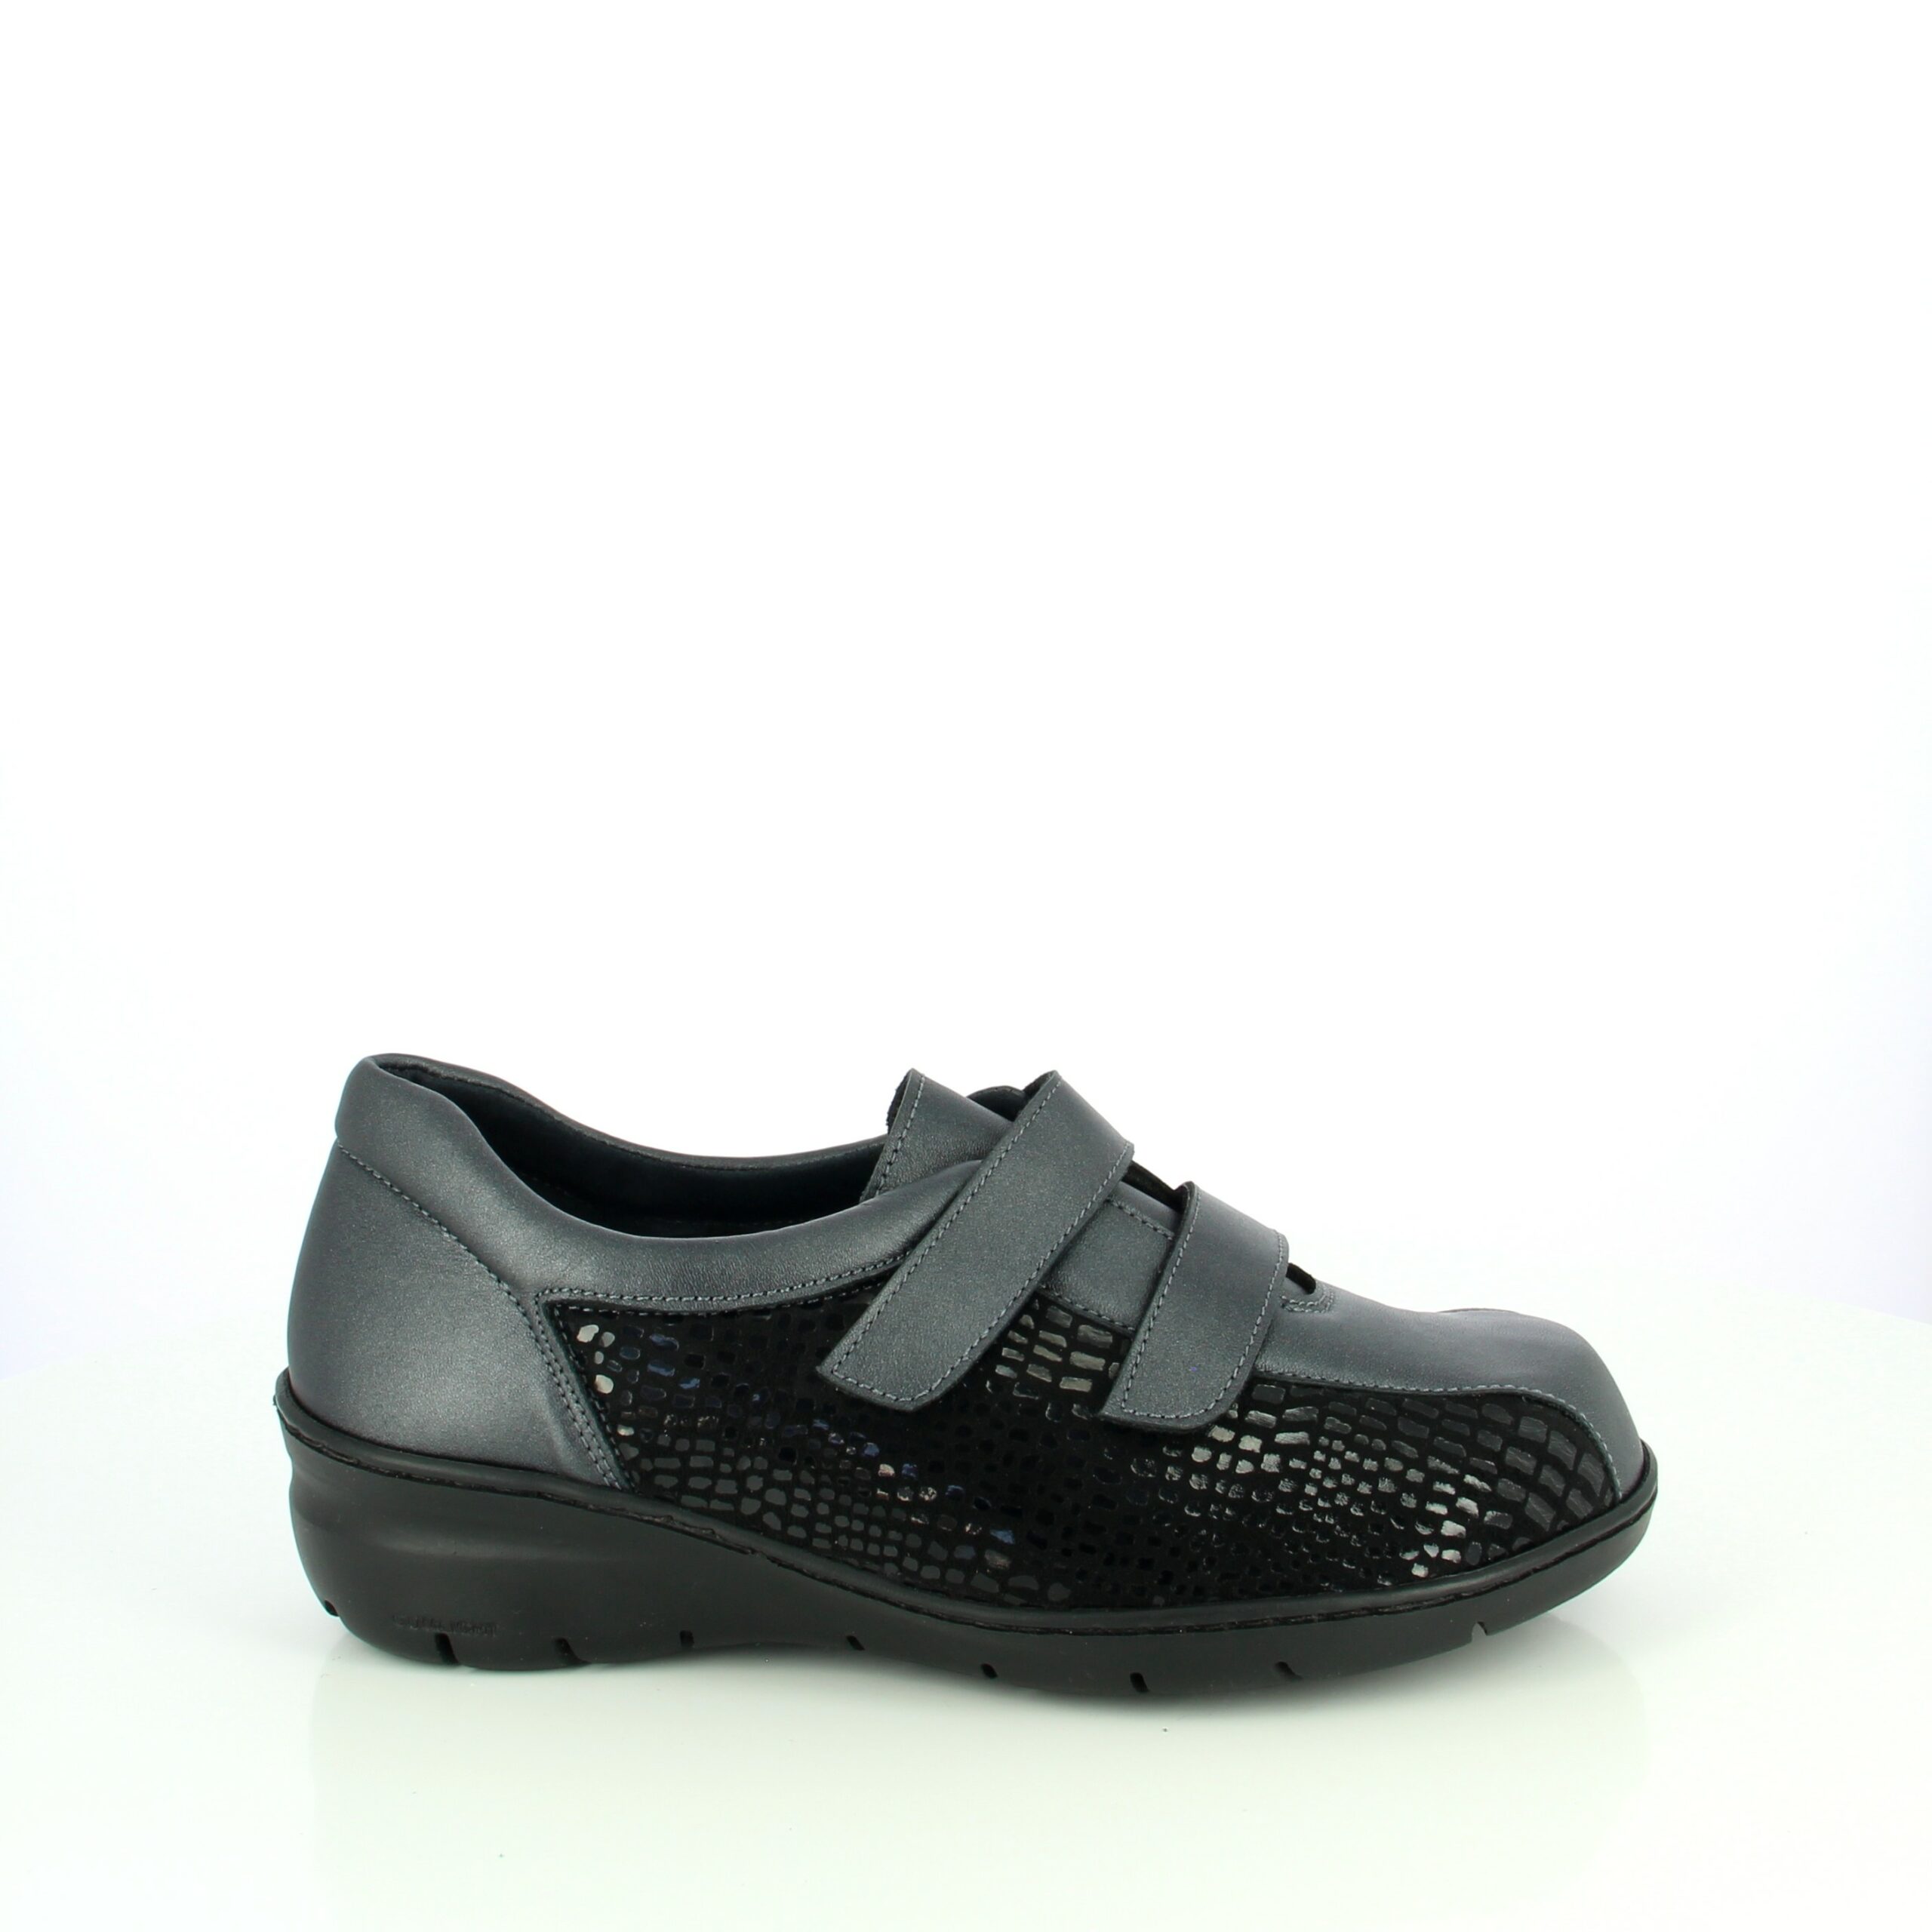 Gorze noir : chaussure thérapeutique pour femme avec volume variable et deux bandes scratch